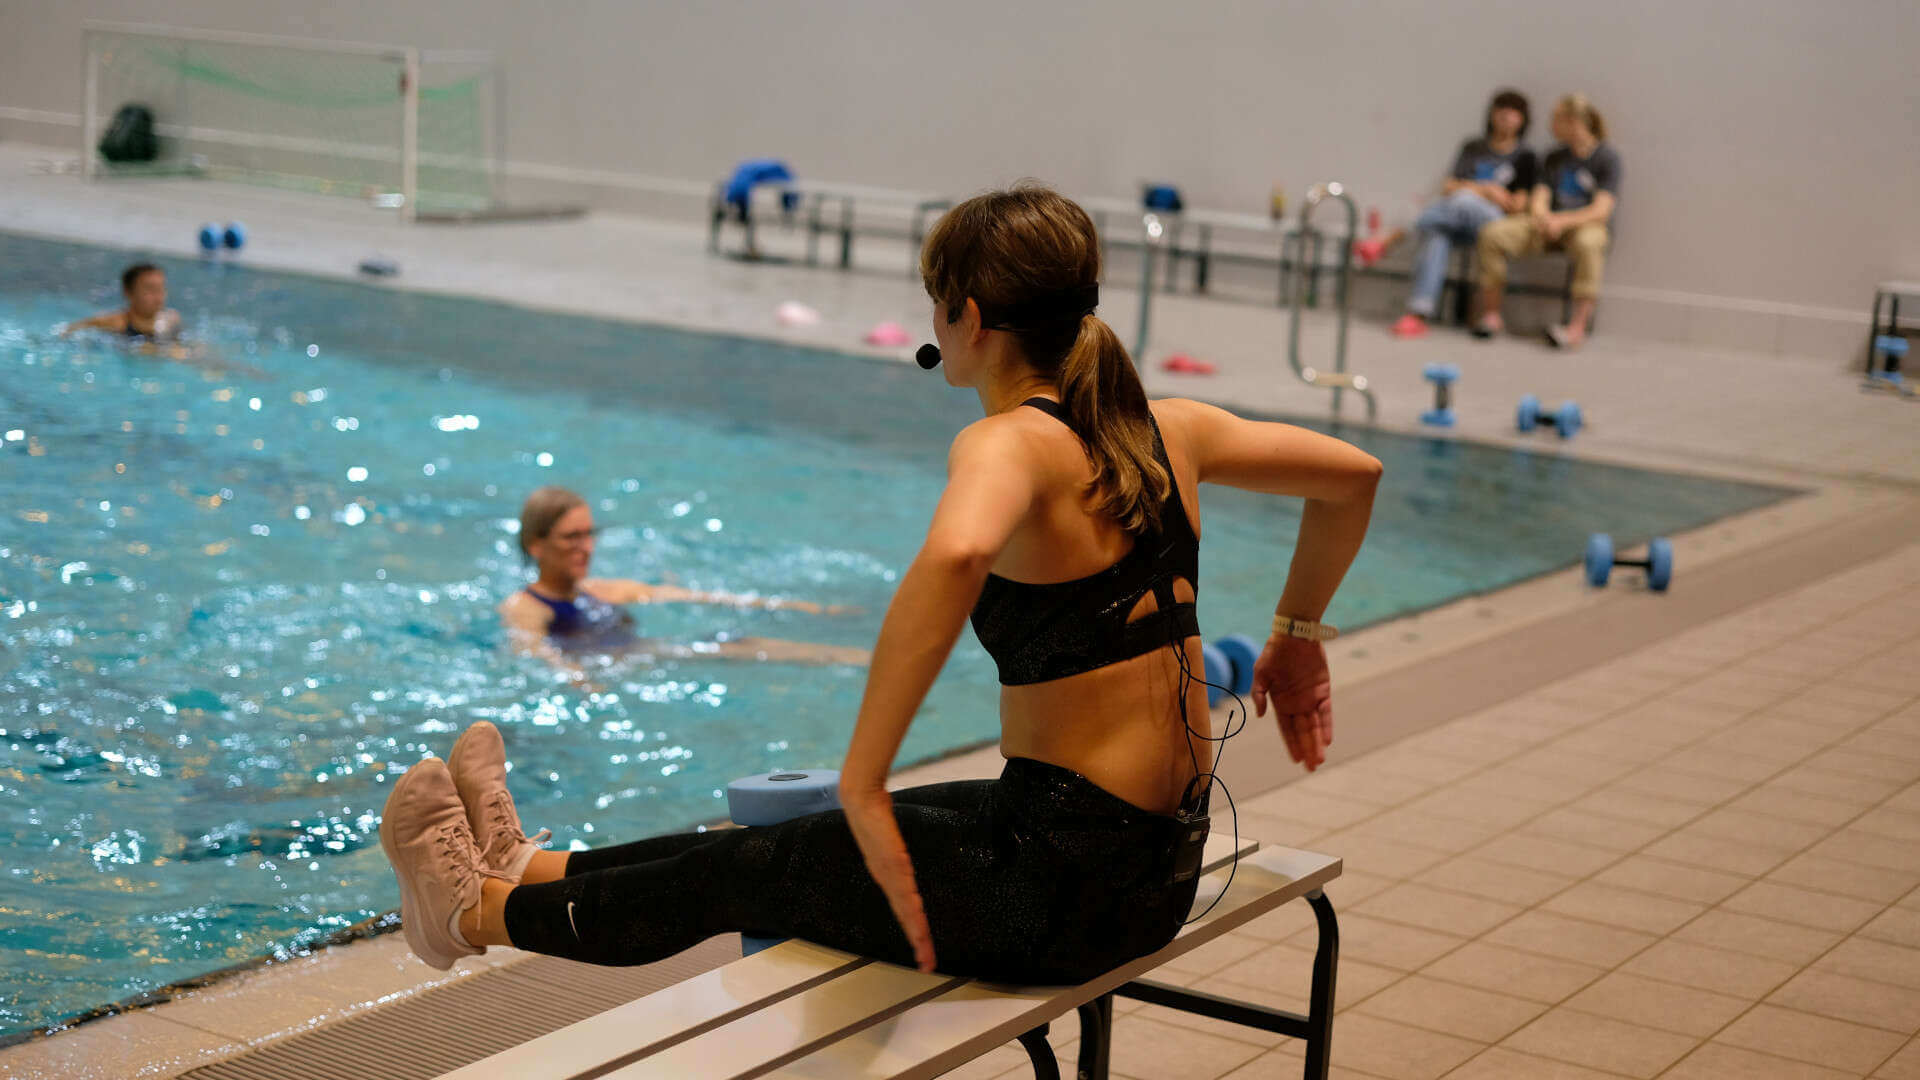 Aqua-Fitness-Trainerin sitzend auf einer Bank mit dem Rücken zum Betrachter, Beine ausgestreckt, Arme seitlich angewinkelt, mit Blick zum Becken, in dem Teilnehmende zu sehen sind.